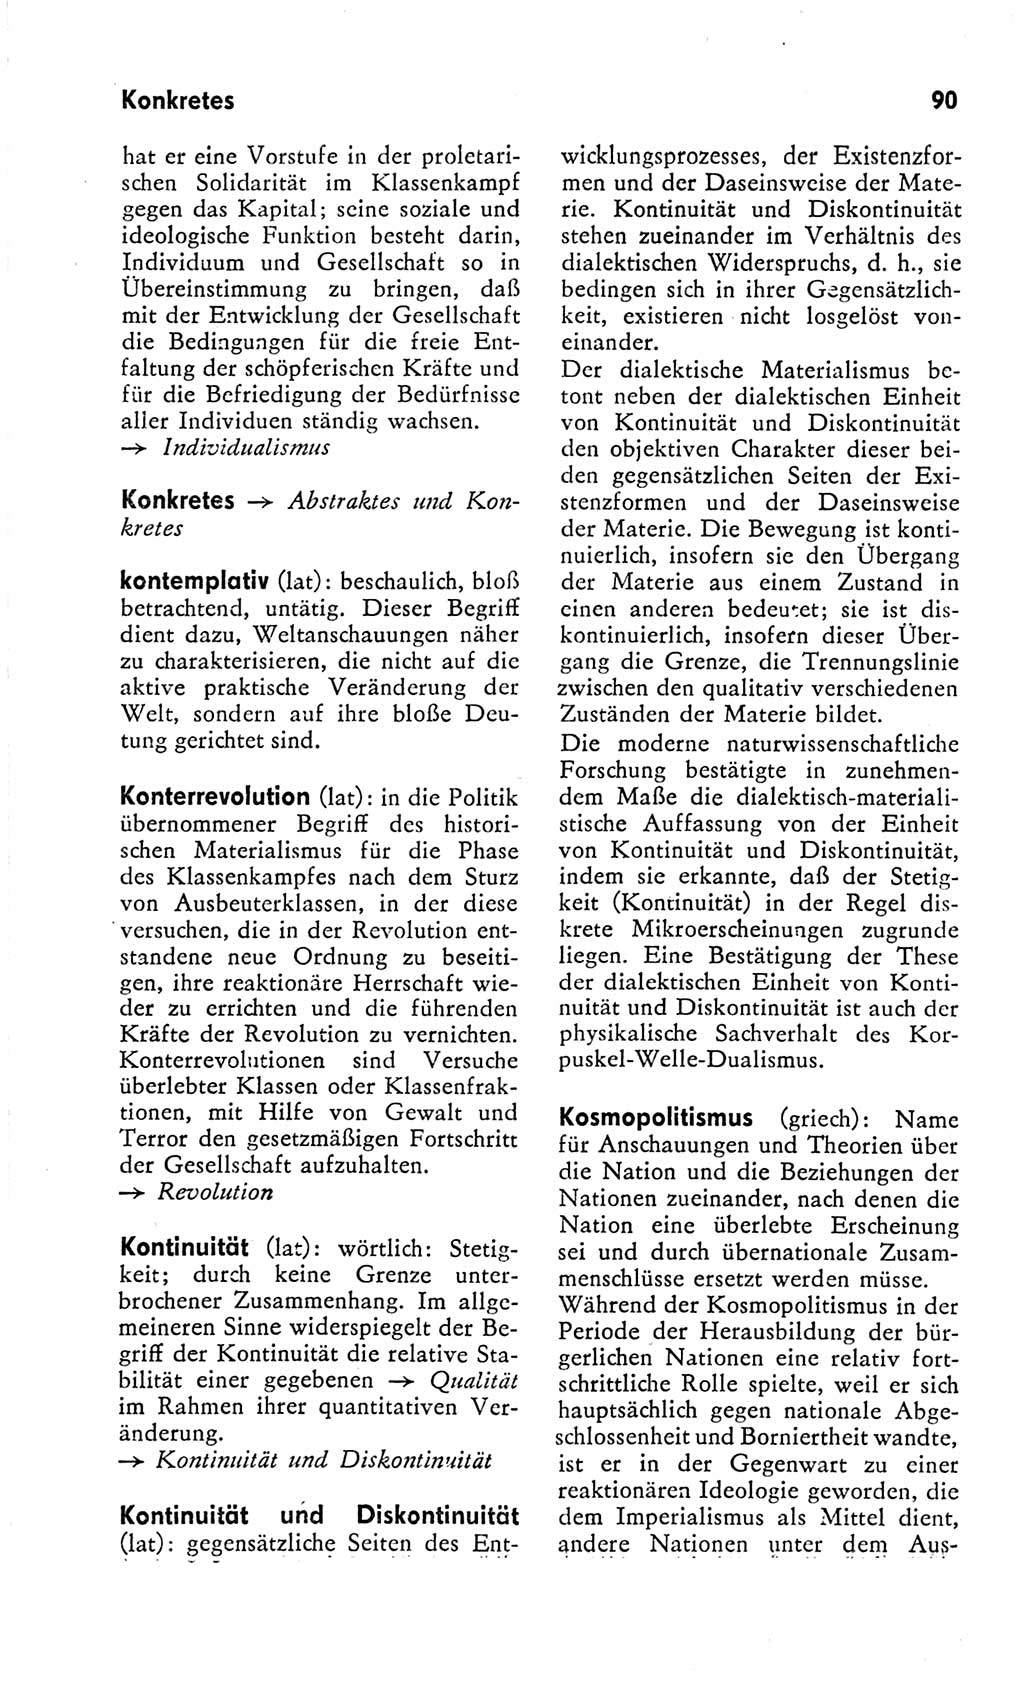 Kleines Wörterbuch der marxistisch-leninistischen Philosophie [Deutsche Demokratische Republik (DDR)] 1966, Seite 90 (Kl. Wb. ML Phil. DDR 1966, S. 90)